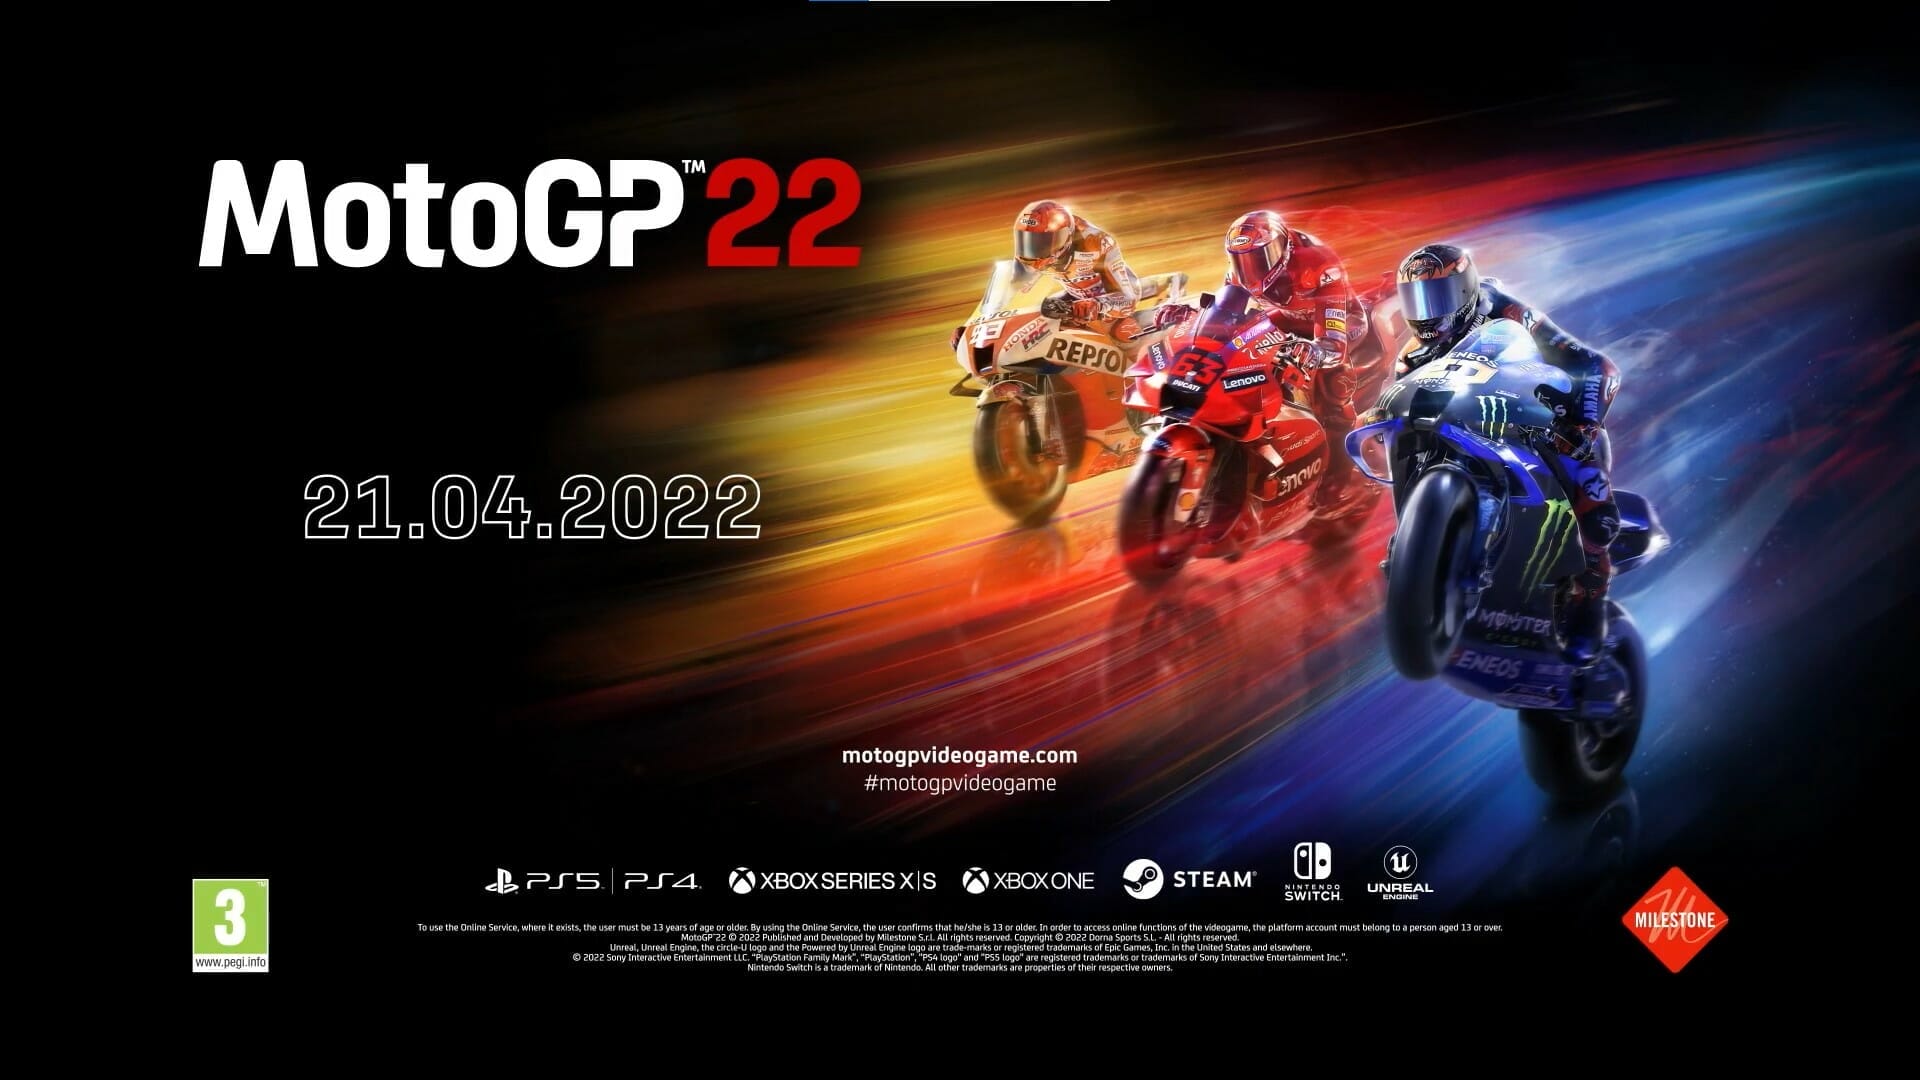 MotoGP22 – Nostalgie trifft Moderne
- auch in der MOTORRAD NACHRICHTEN APP